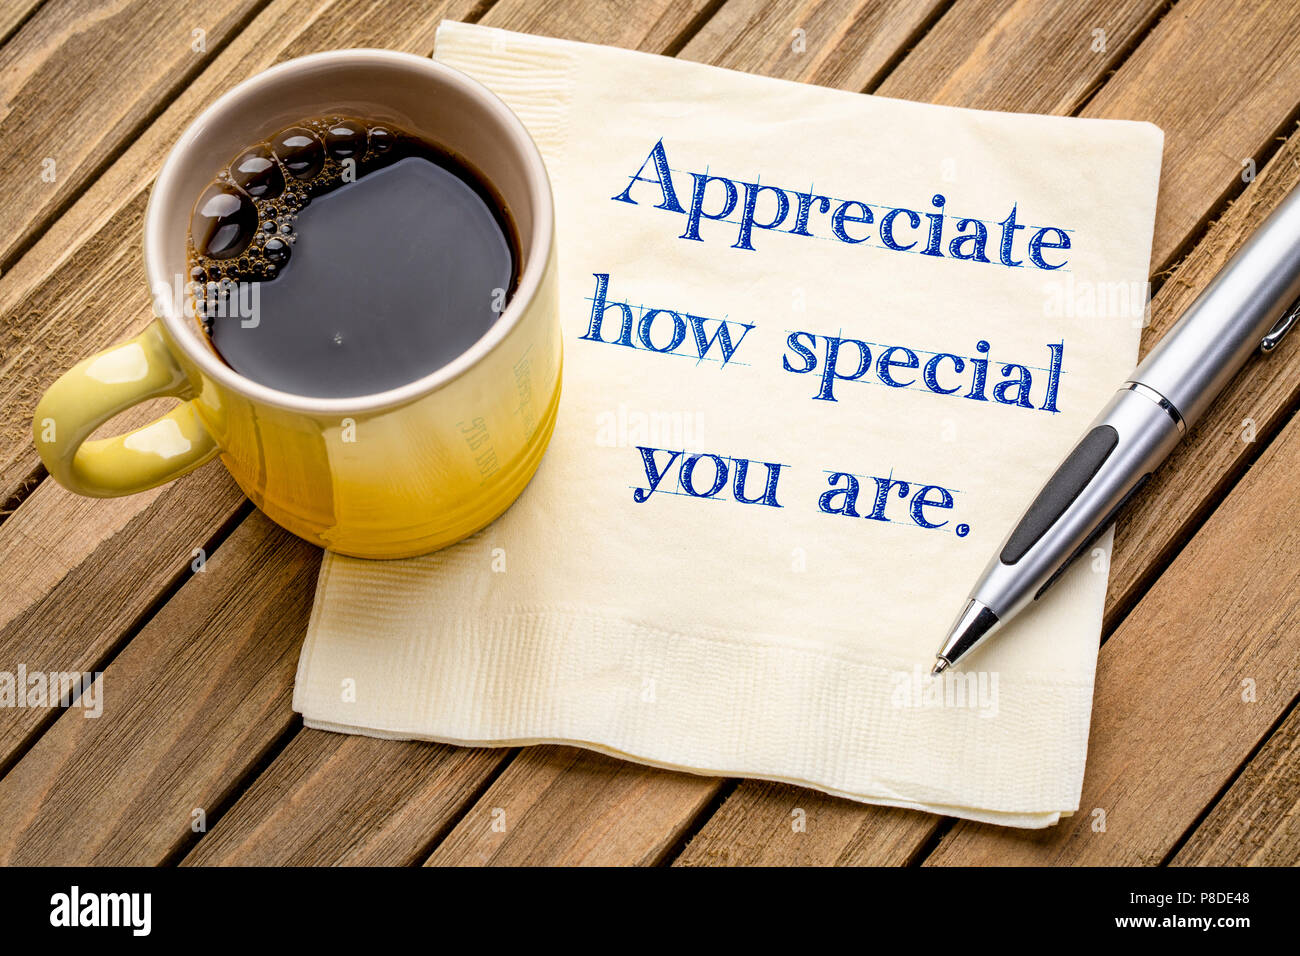 Spaecial zu schätzen, wie Sie sind - Handschrift auf eine Serviette mit einer Tasse Kaffee Stockfoto